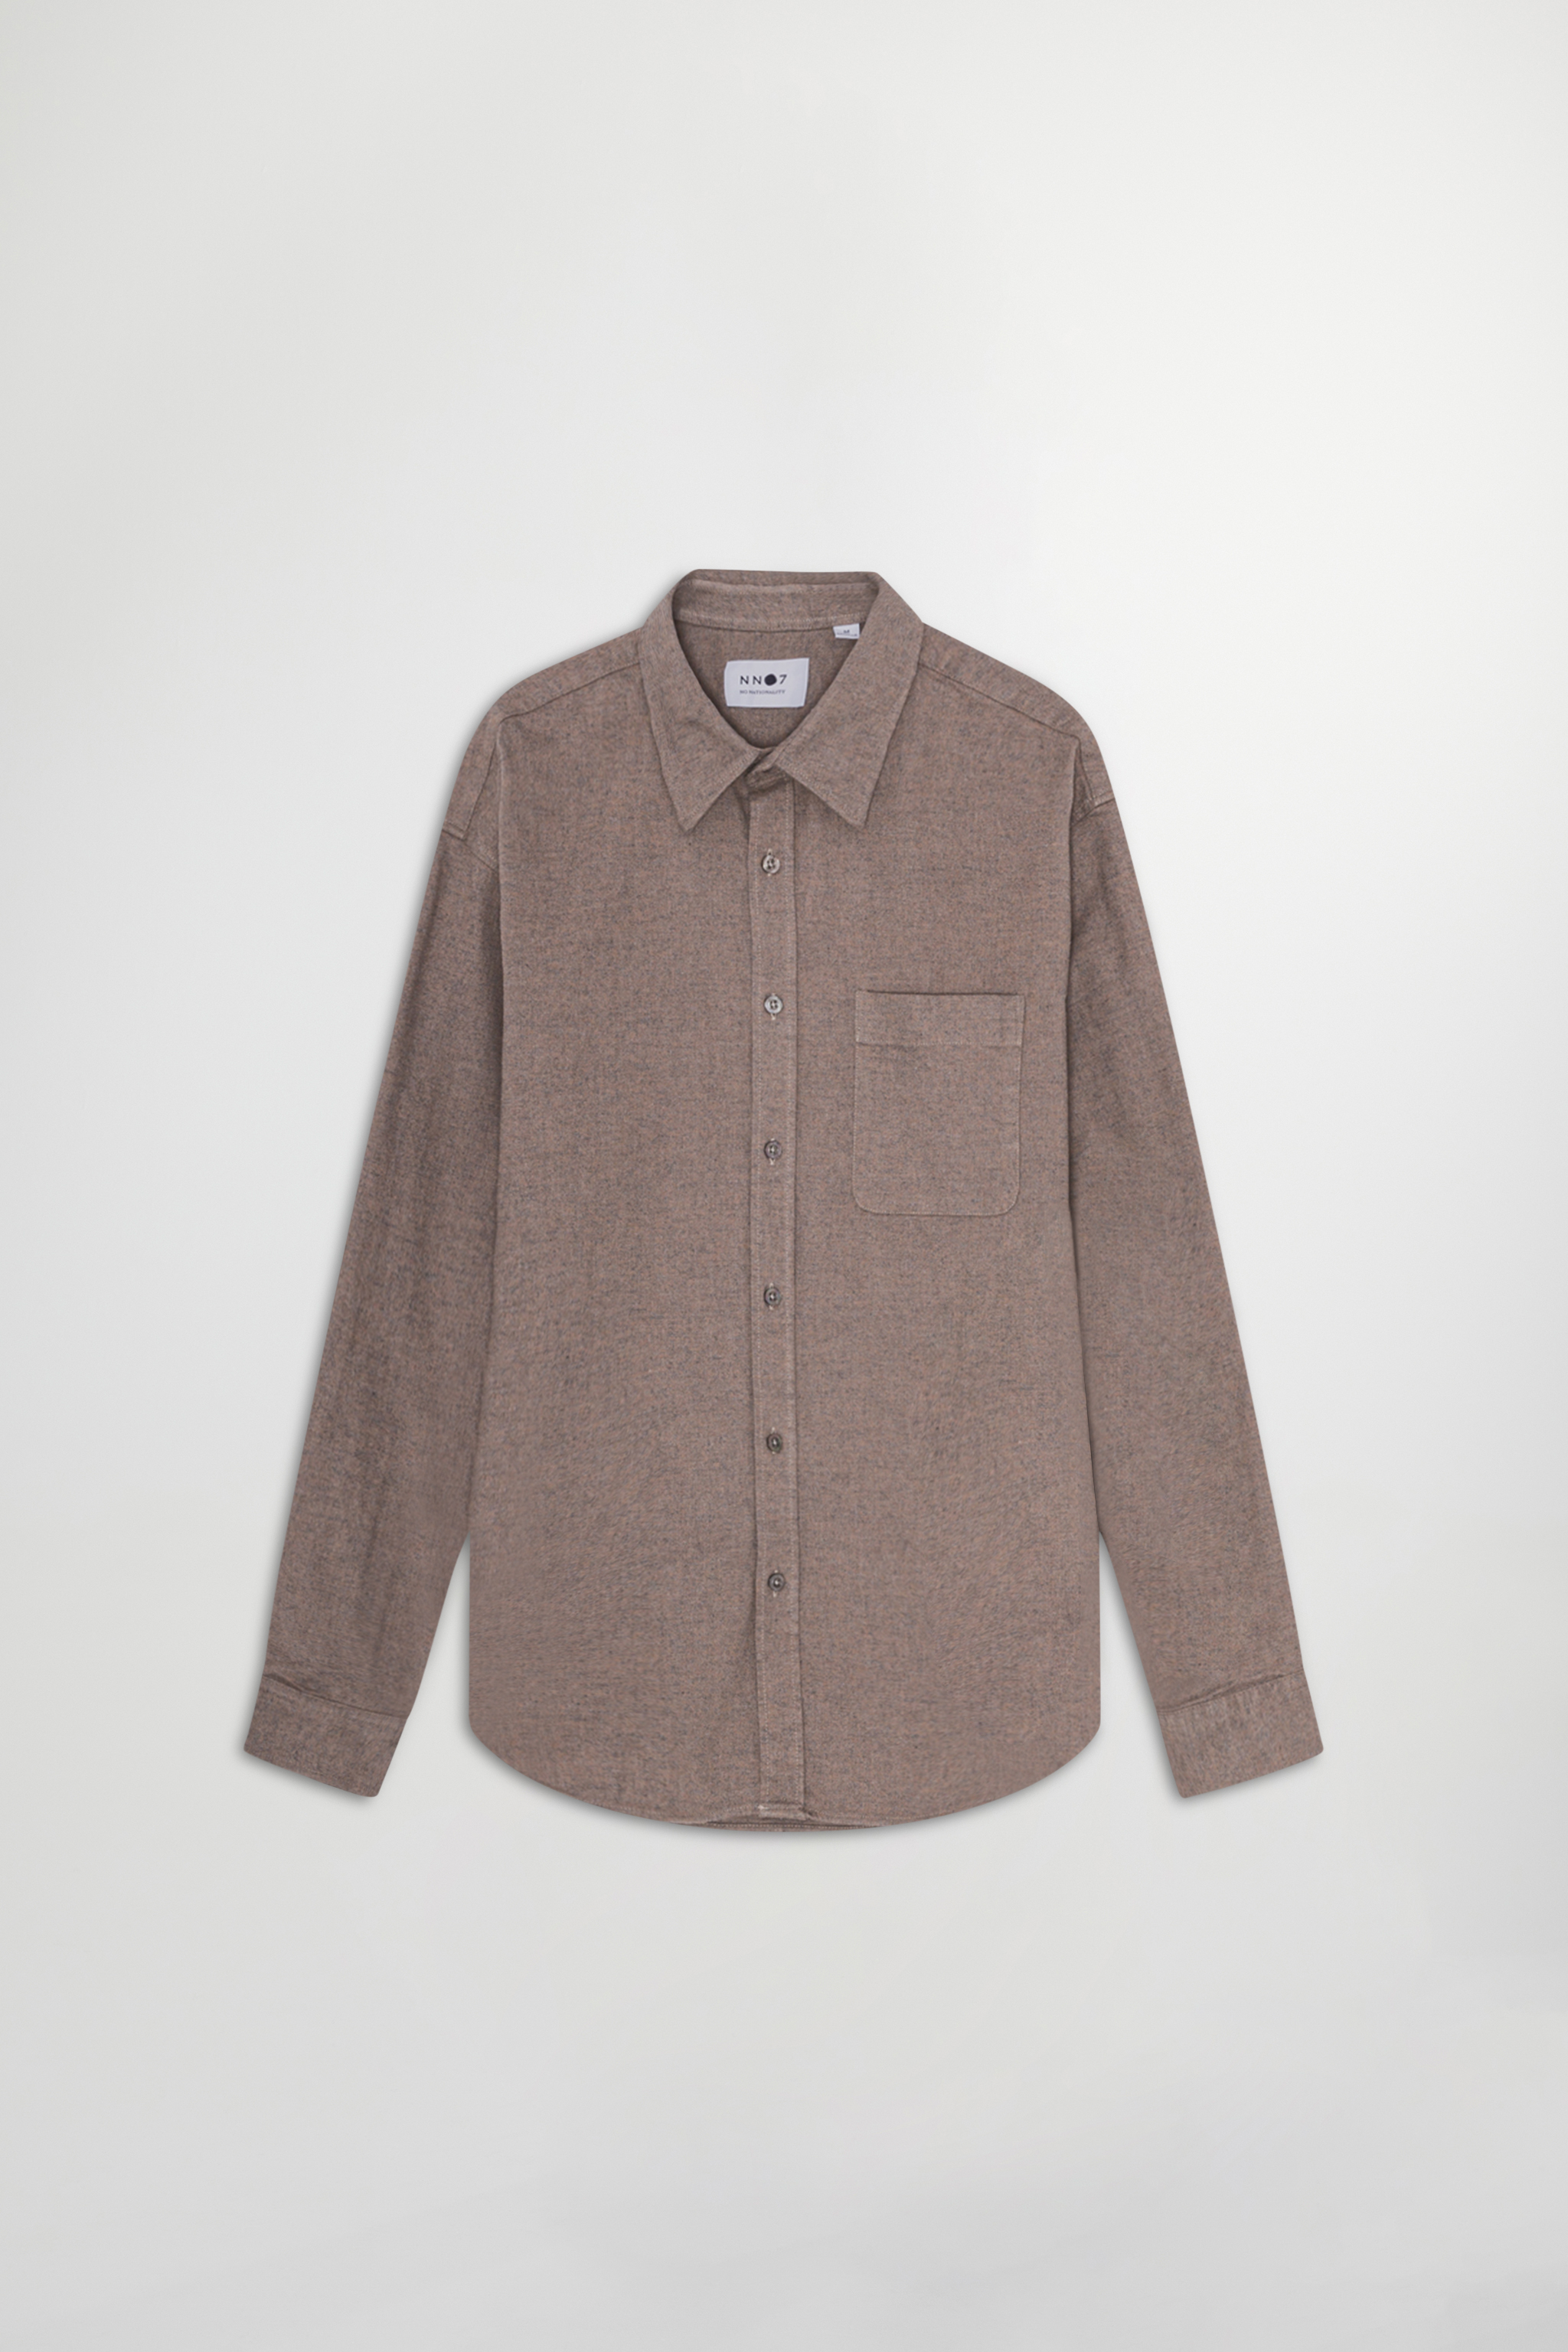 Deon 5354 men's shirt - Brown - Buy online at NN.07®